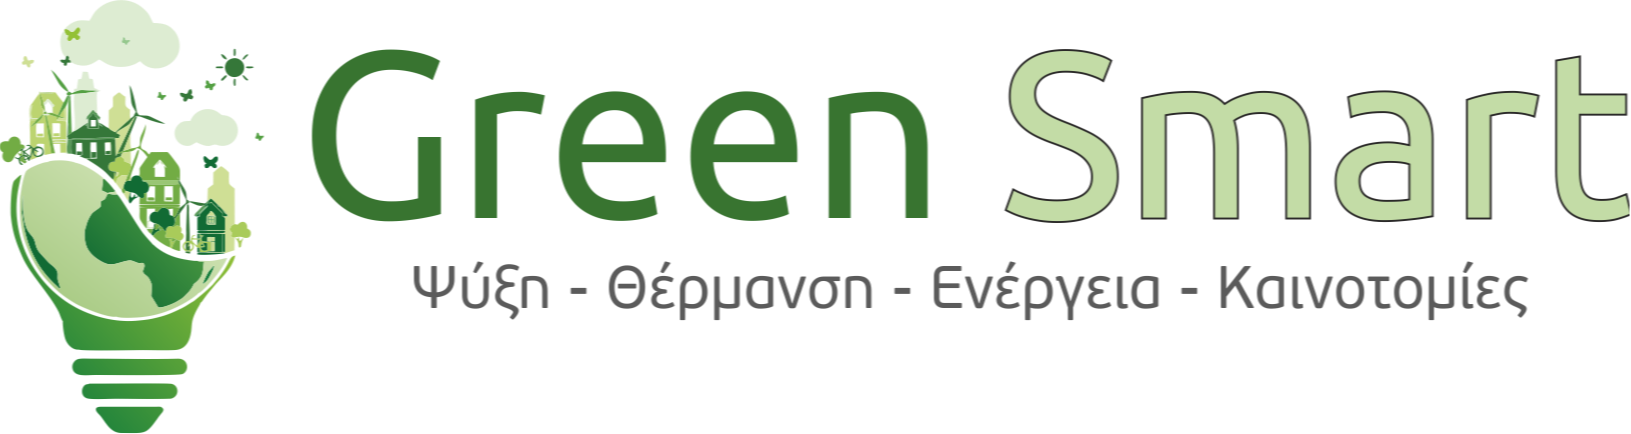 GreenSsmart.gr Logo